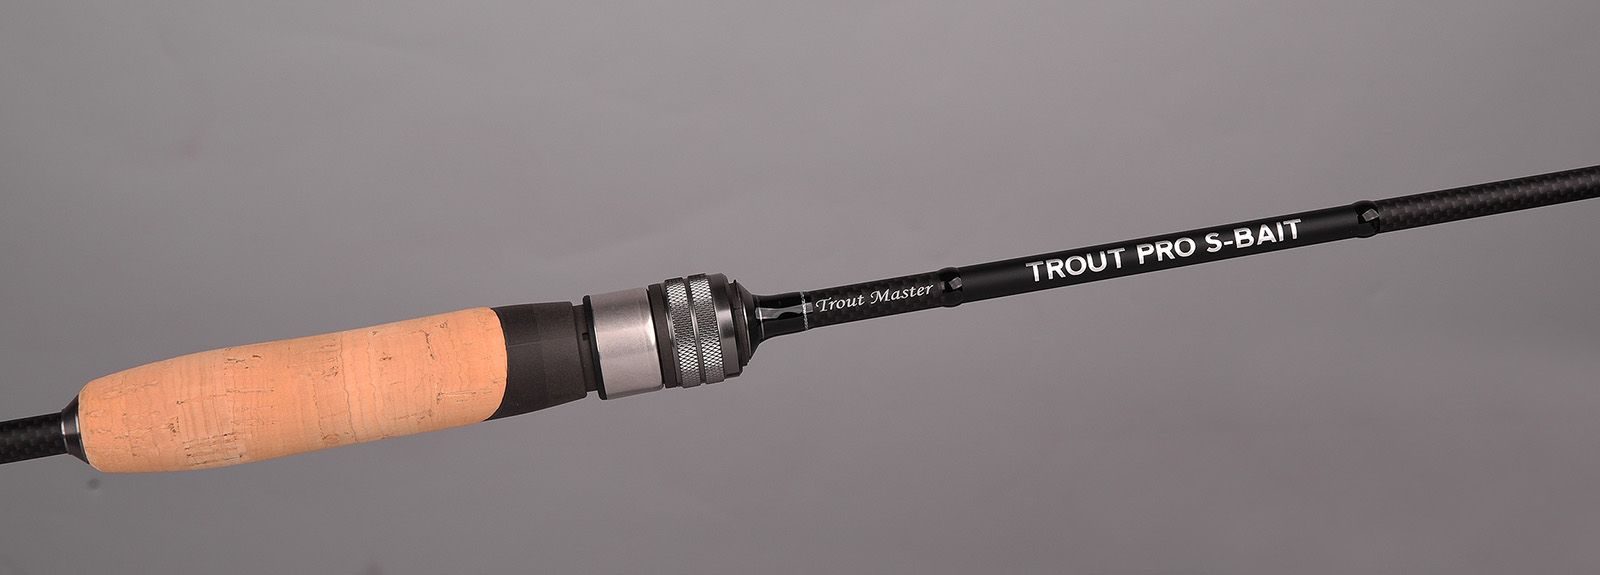 Spro Trout Master Trout Pro S-Bait Rod 1.80m (4g)